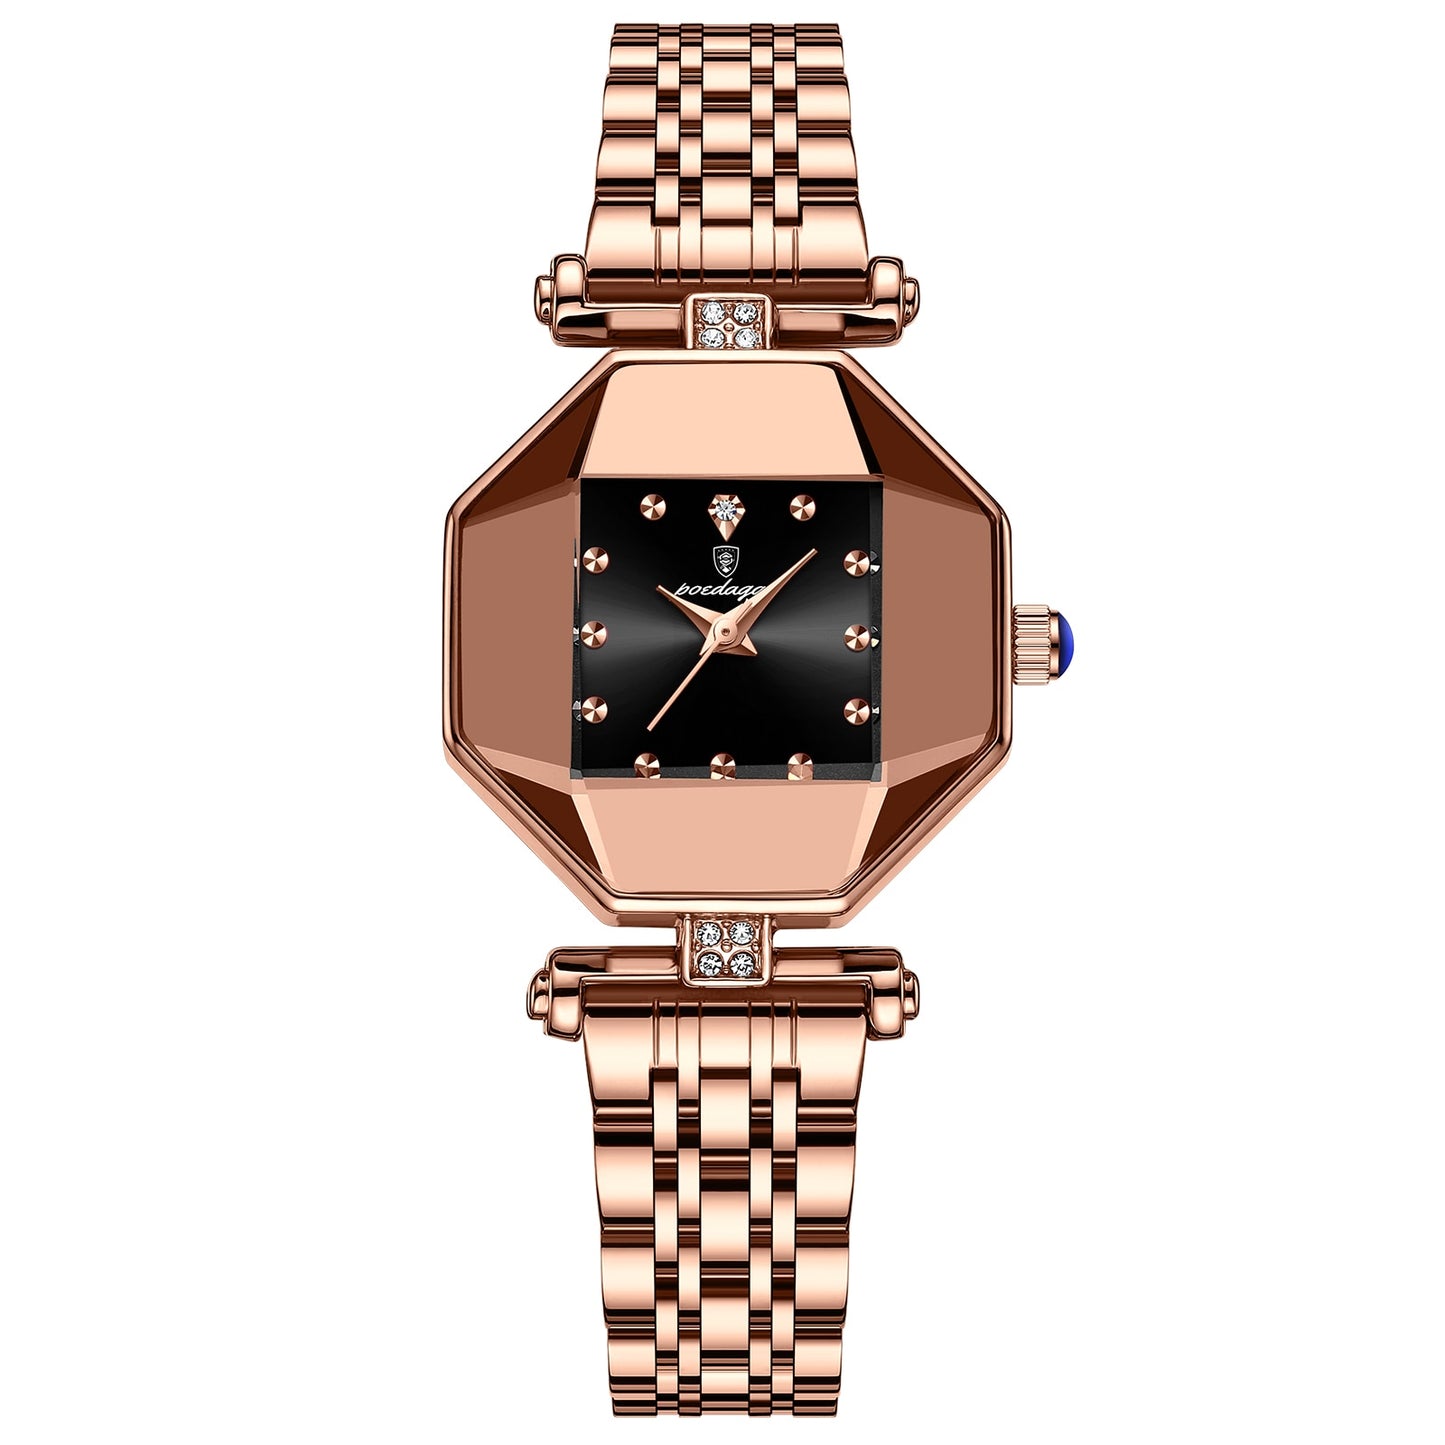 POEDAGAR Women Watch Fashion Luxury Stainless Stain Waterproof Quartz Watches Swiss Top Brand Rose Gold Ladies Wristwatch Gift